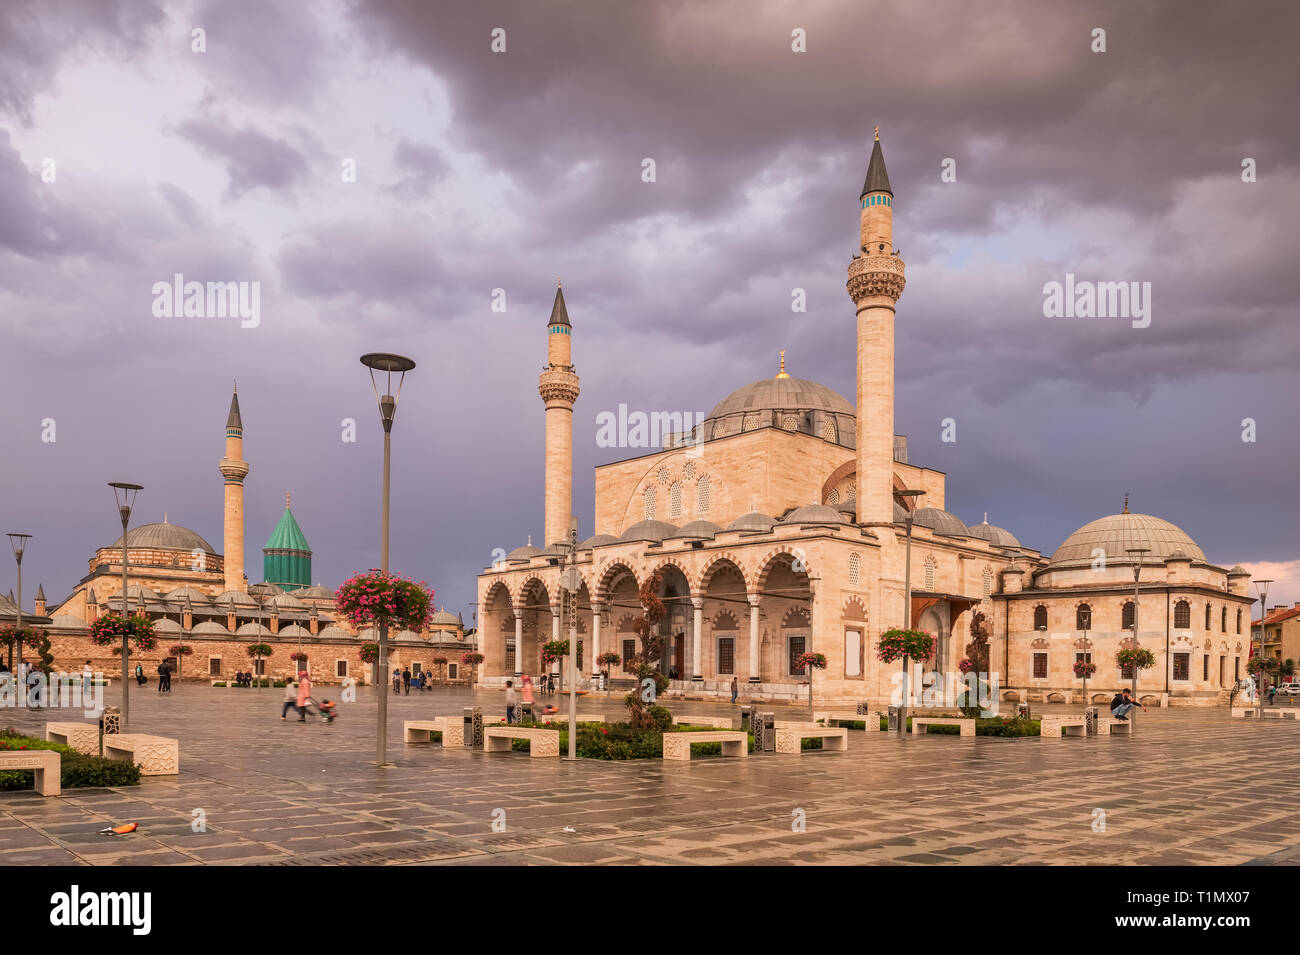 La place centrale de la vieille ville de Konya avec le musée Mevlana sur l'arrière-plan et mosquée Selimiye, Turquie Banque D'Images